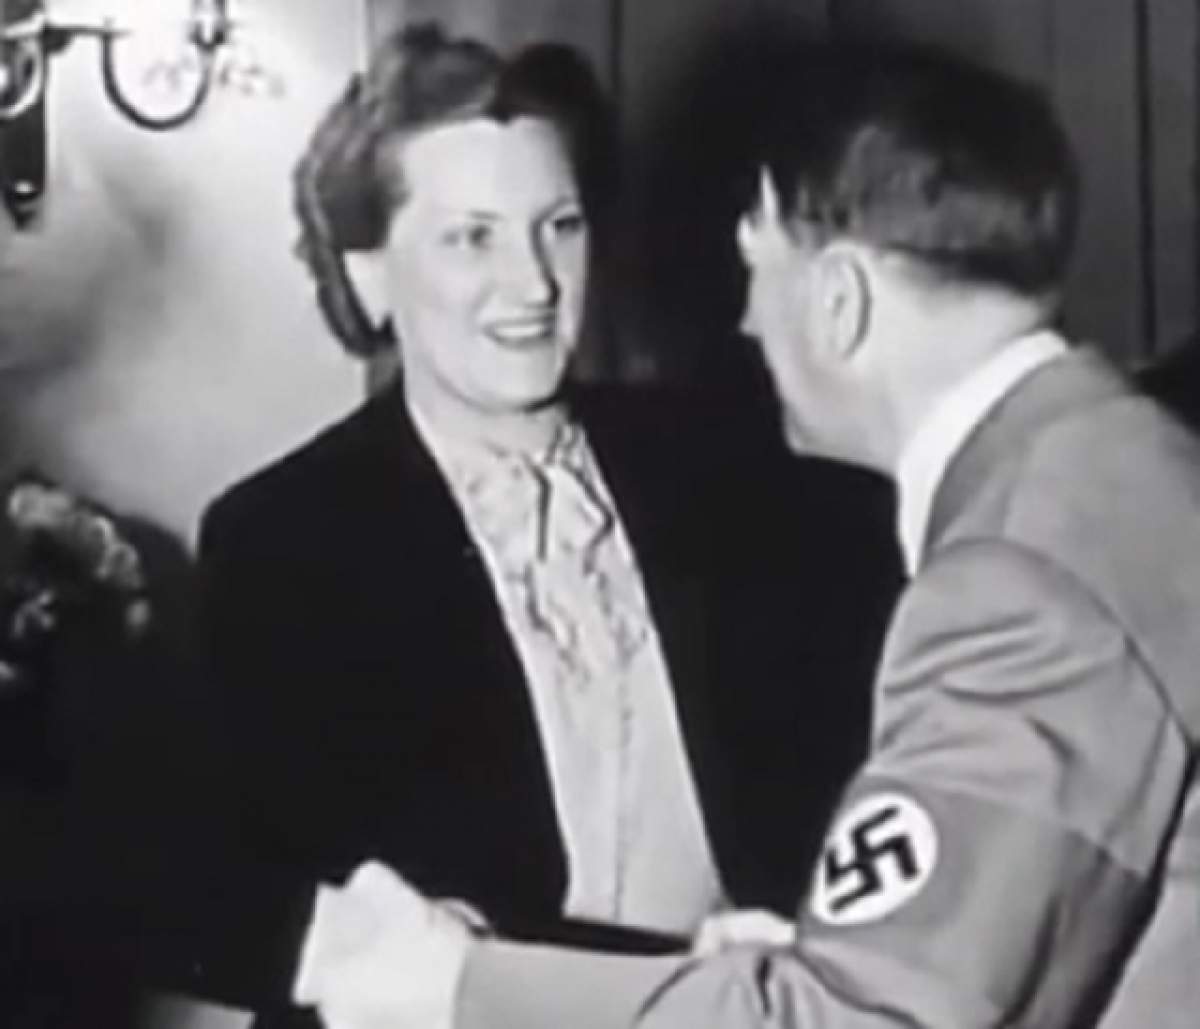 Detalii şocante despre viaţa sexuală a lui Adolf Hitler! Dictatorul german făcea sex cu haine pe el